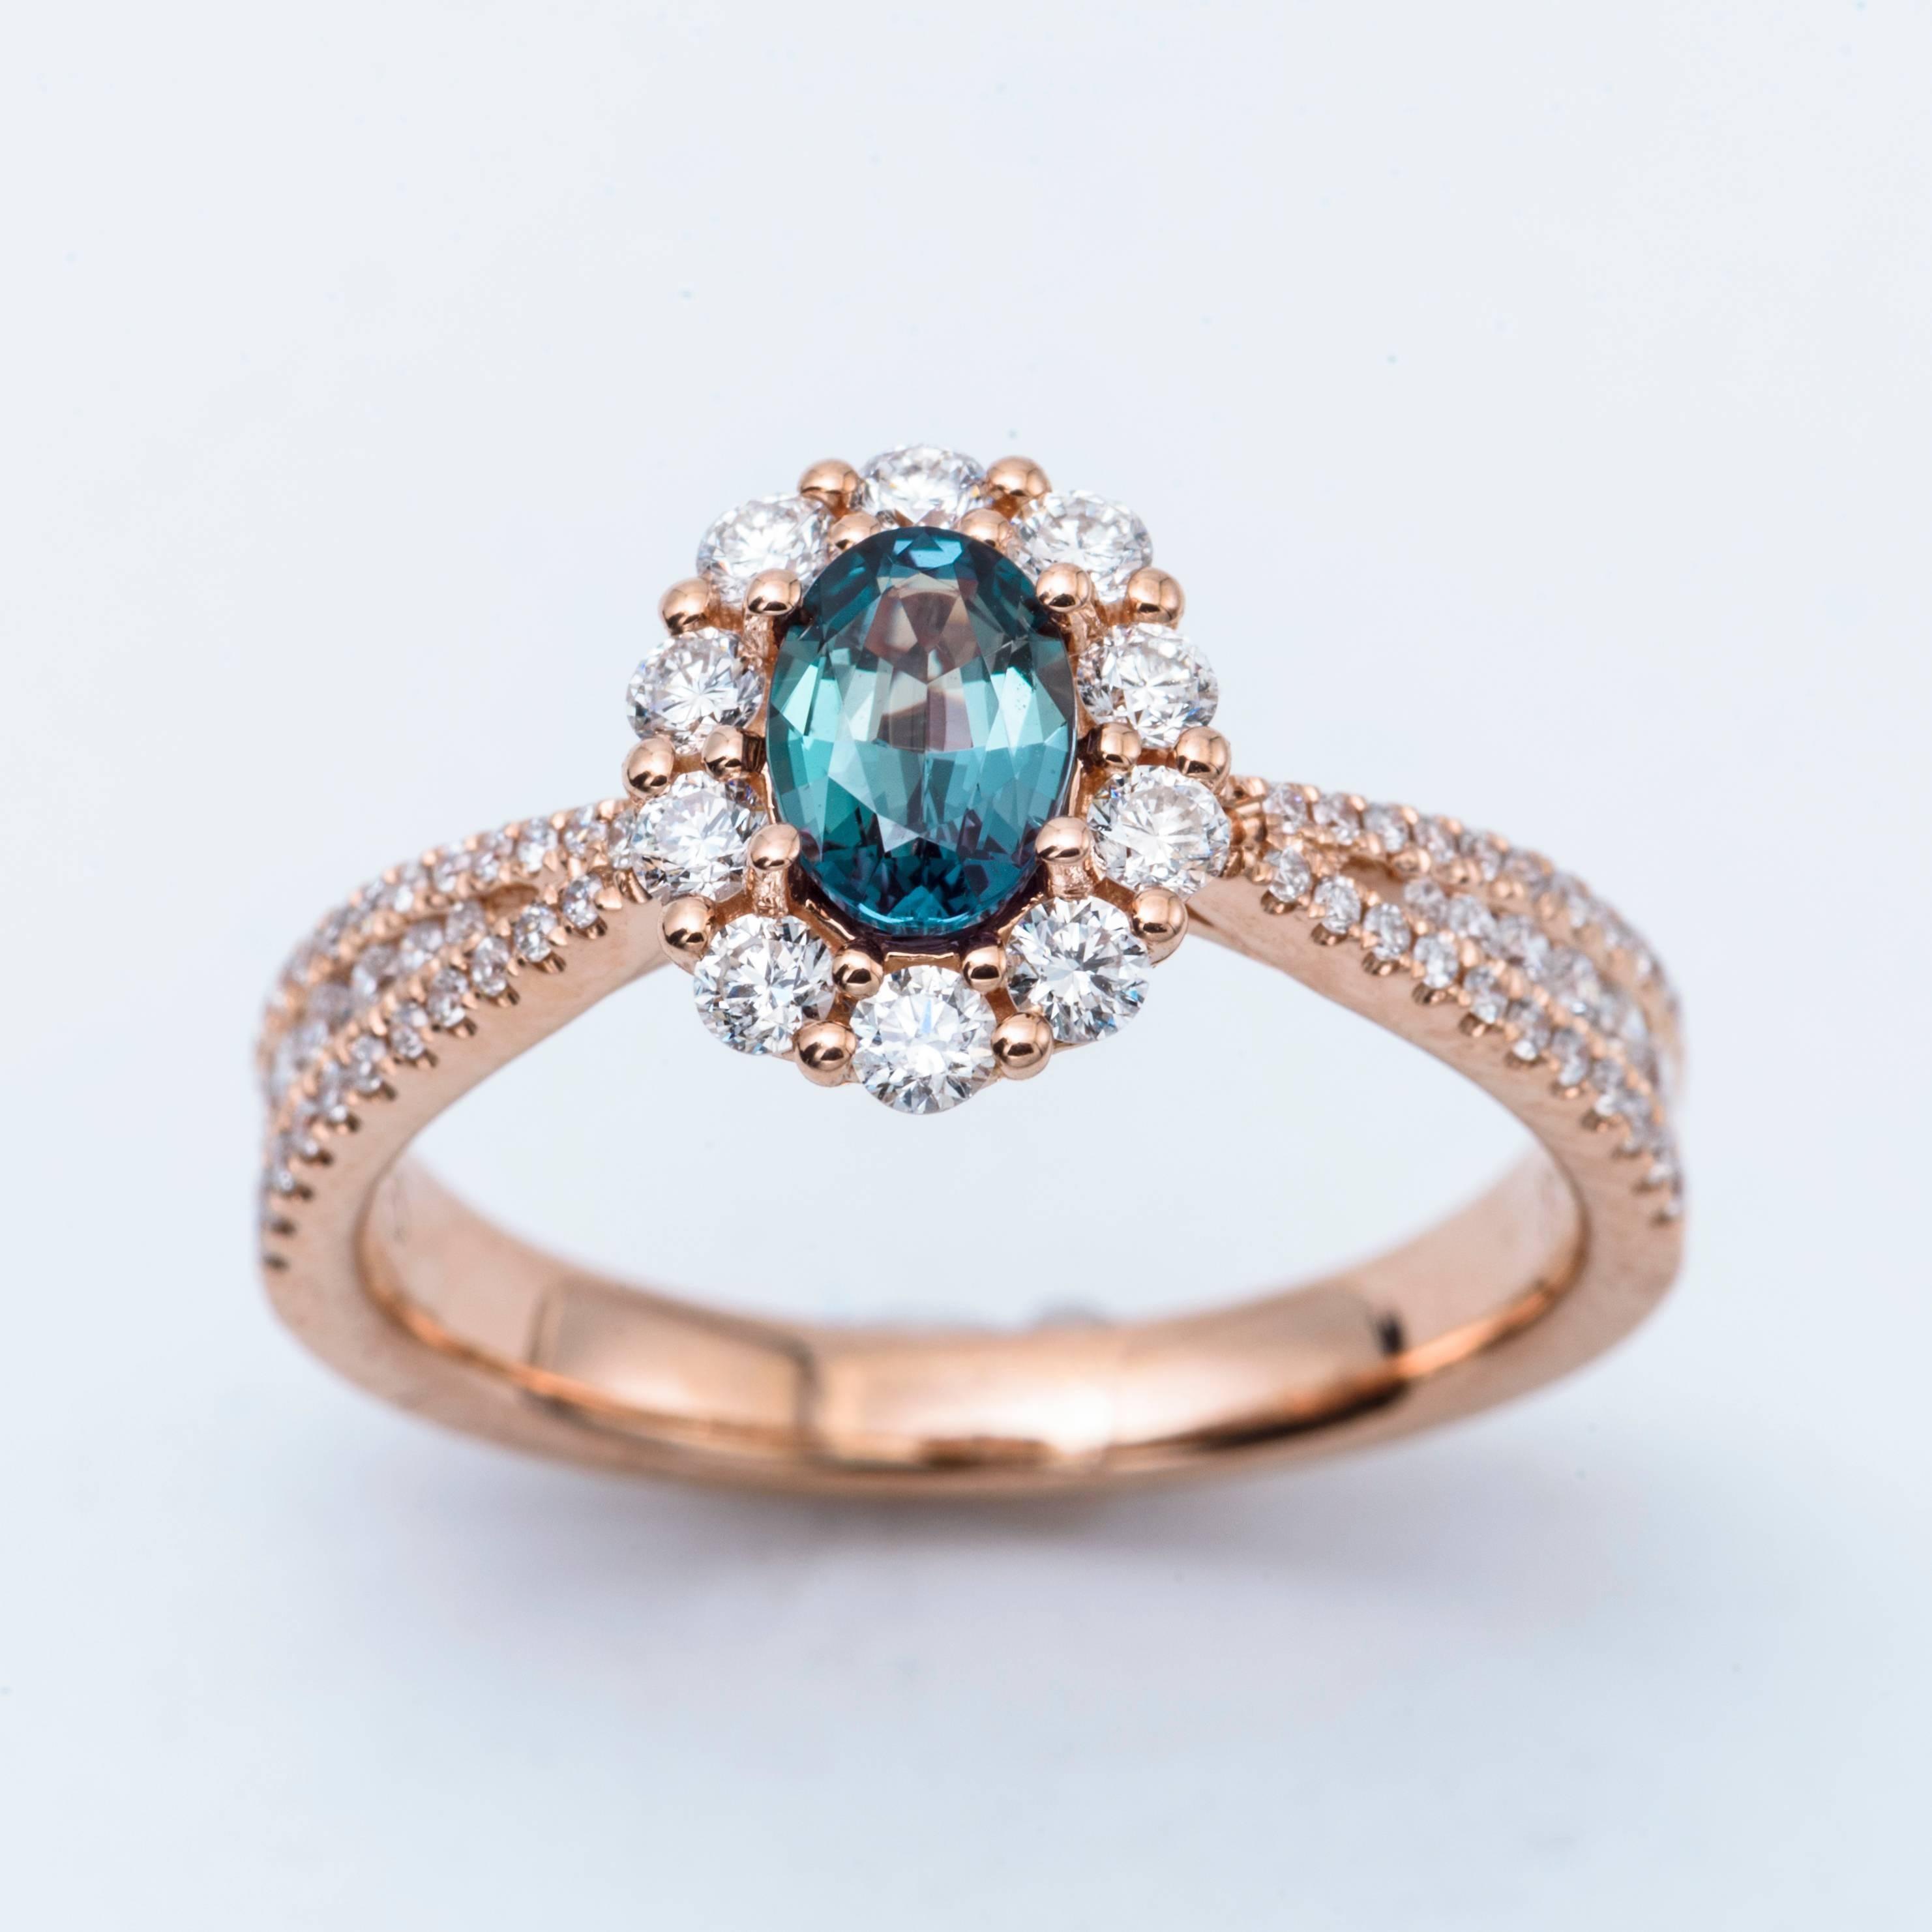 Alexandrite Ring 0.55 Carats
18K Rose Gold
0.63 Carats Diamonds